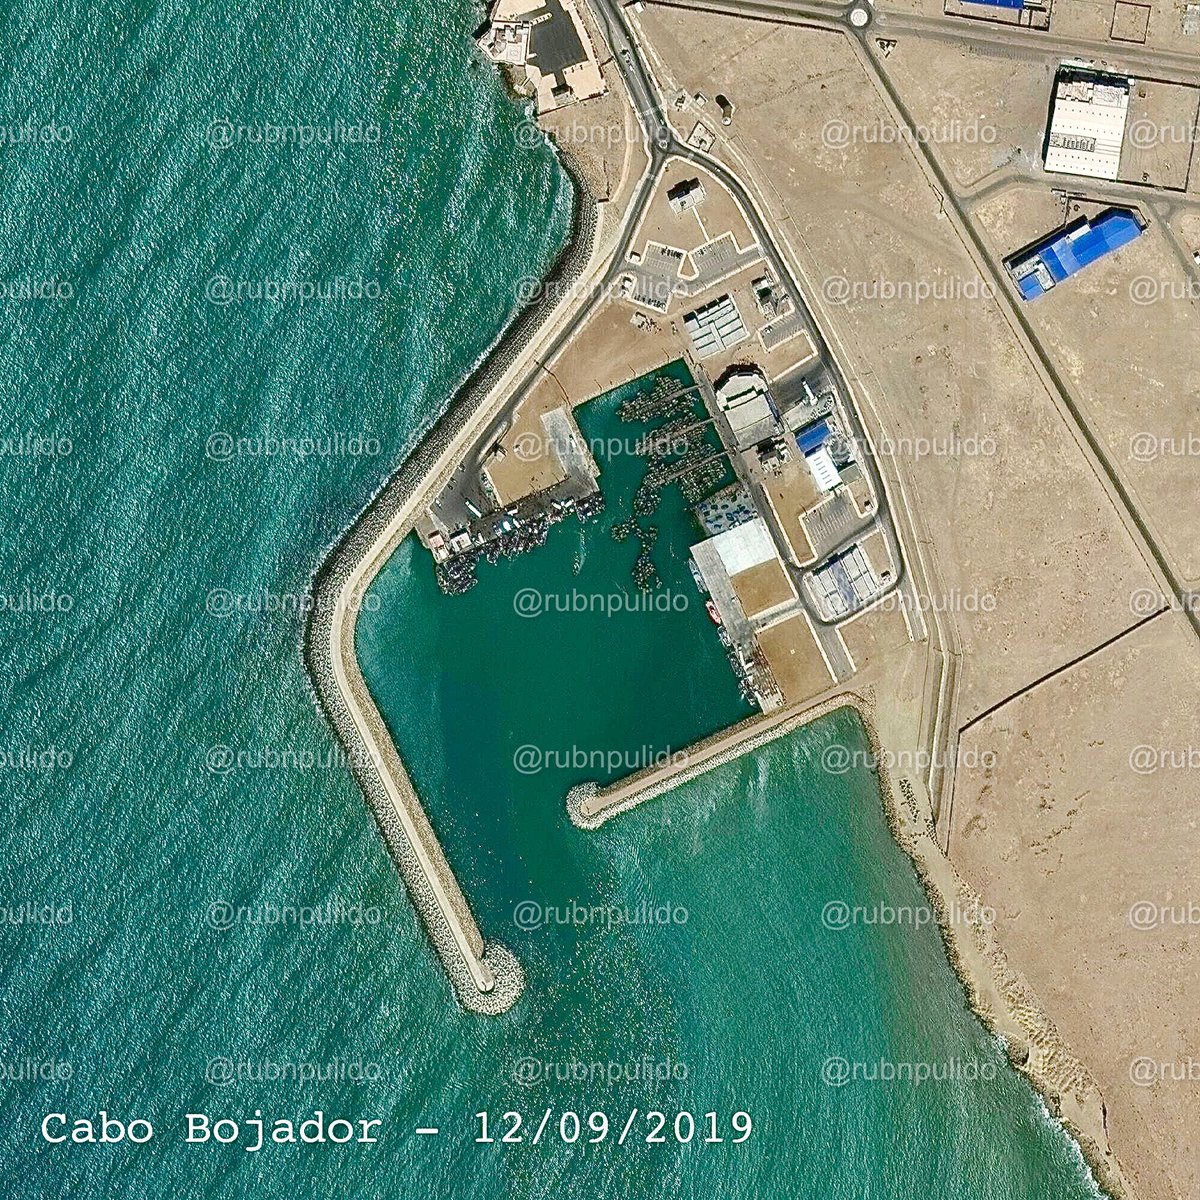  Cabo Bojador. Imágenes satelitales tomadas desde septiembre de 2019 a mayo de 2021.En poco más de un año, un puerto utilizado para la pesca triplica el número de embarcaciones. Actualmente se mantiene en un número similar. Y NO, no es por la pesca.